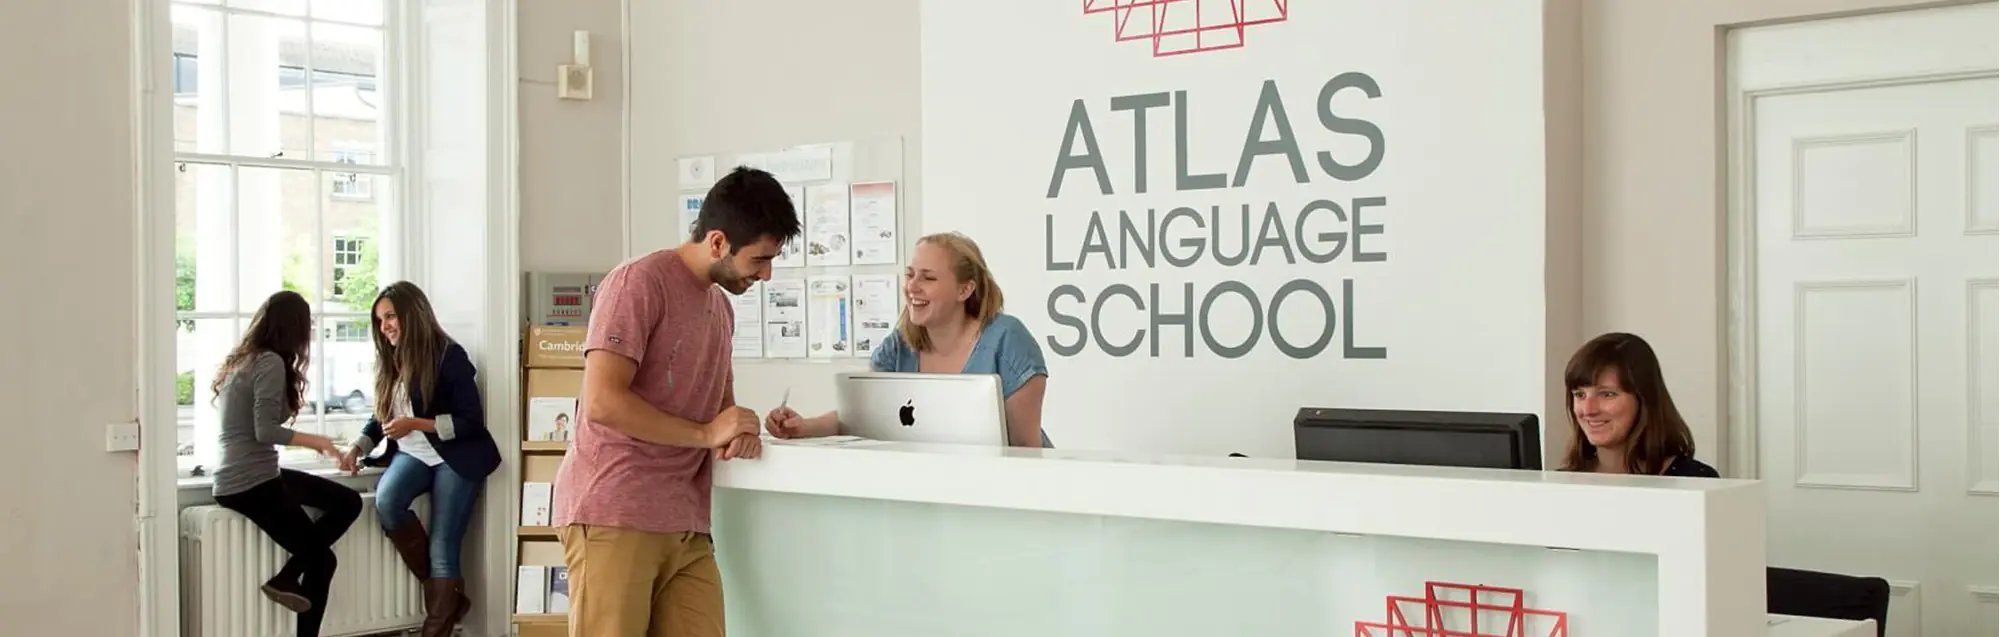 Programmi per studiare e lavorare di Atlas Language School